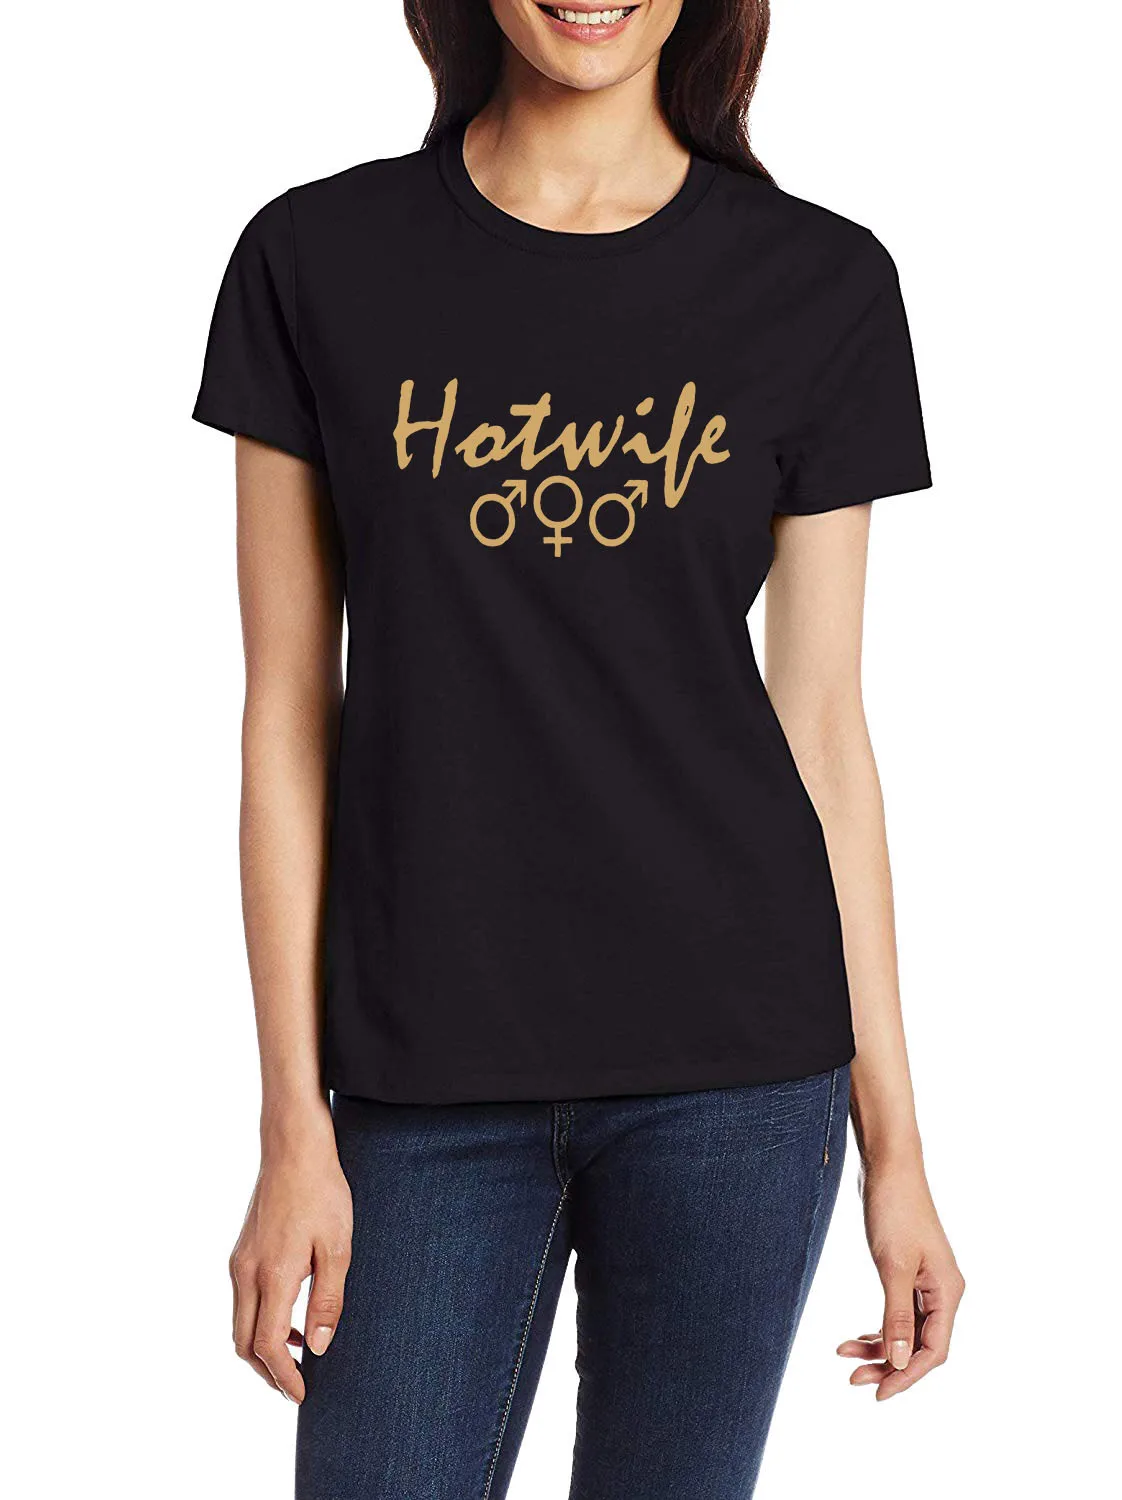 

Hotwoman MFM дизайнерские непослушные футболки для взрослых с юмористическим флиртом стильные футболки свингер забавные повседневные топы для ...